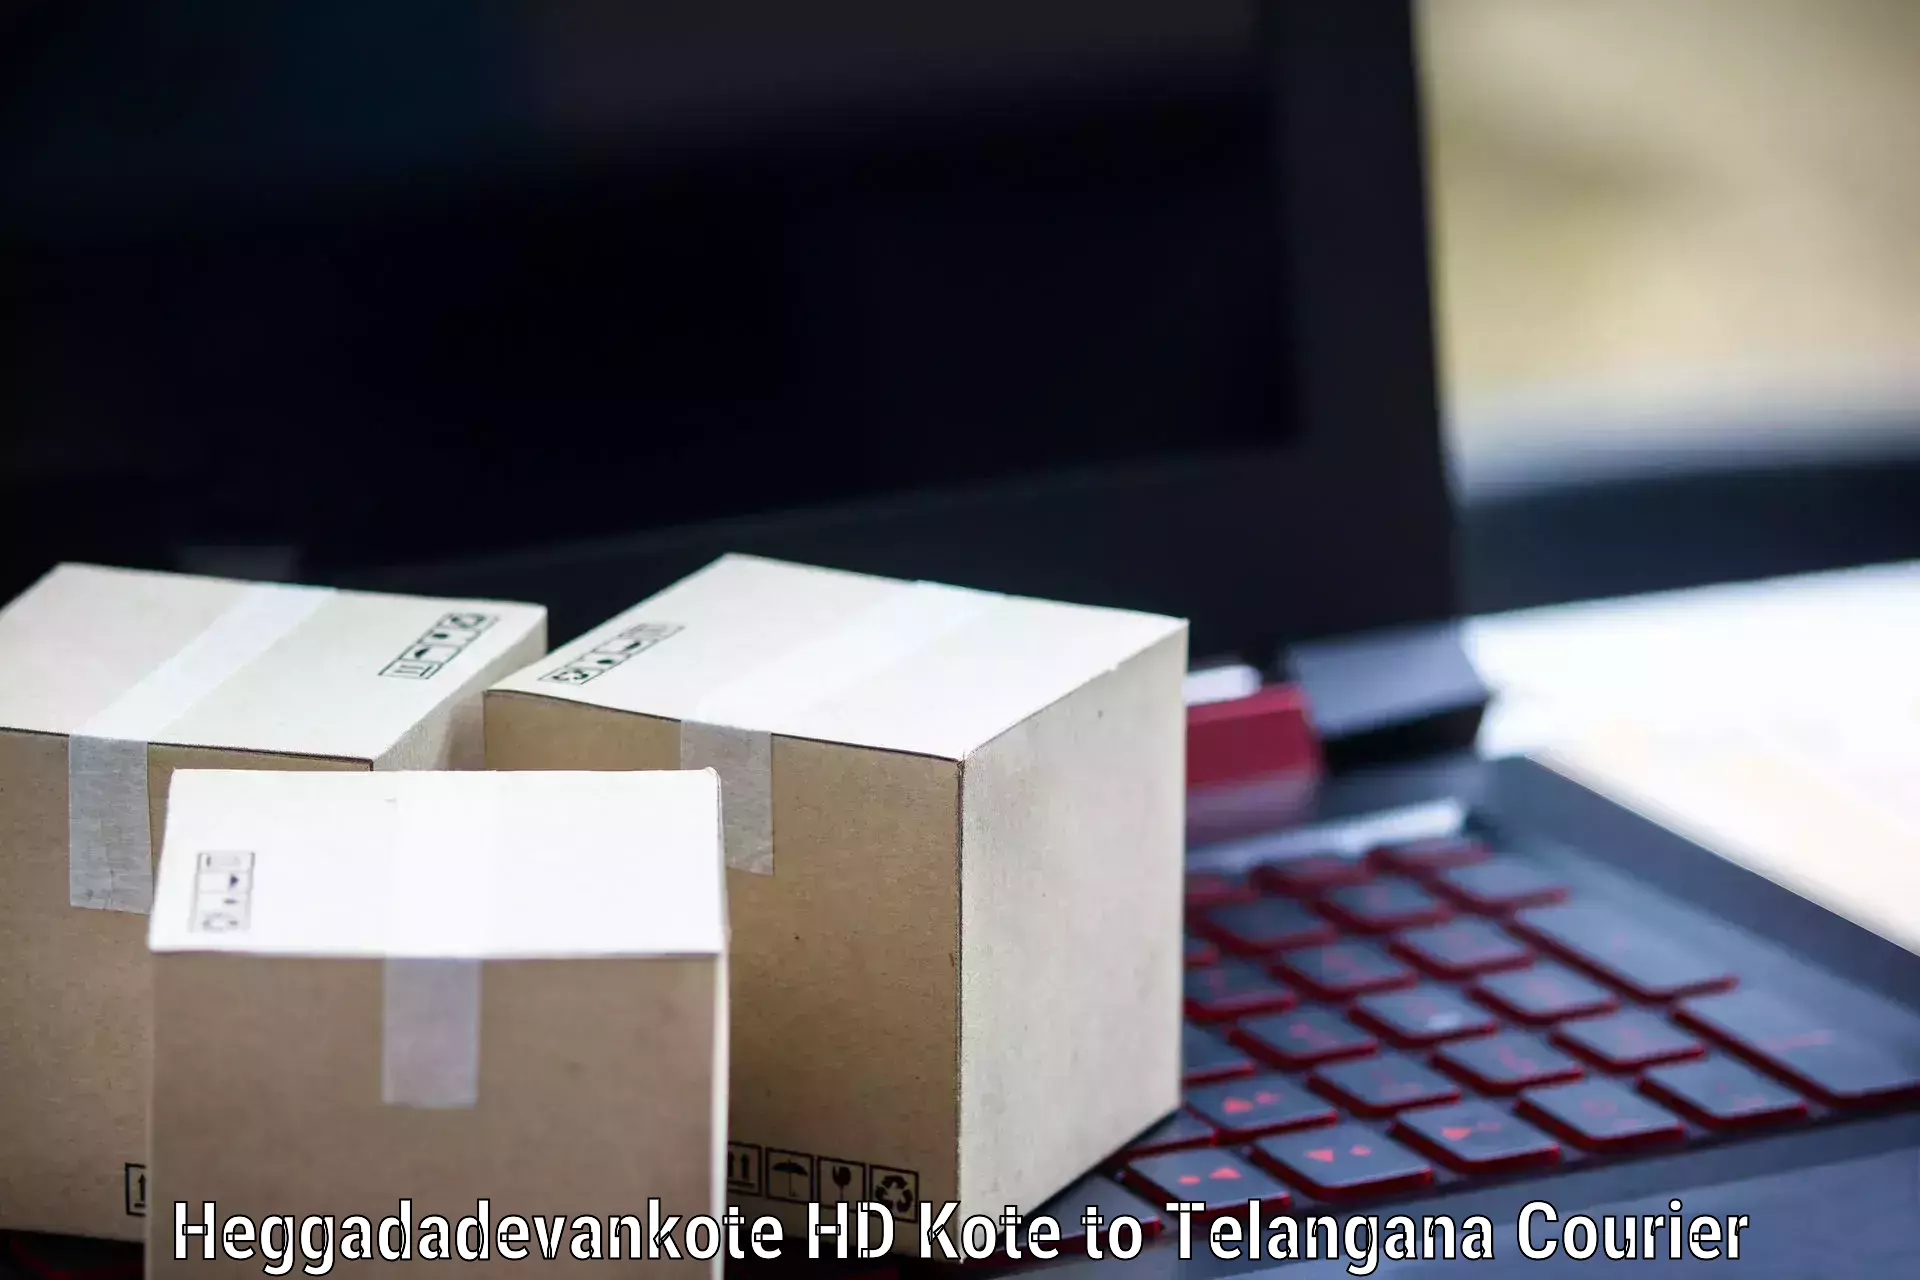 Efficient parcel tracking Heggadadevankote HD Kote to Narsampet